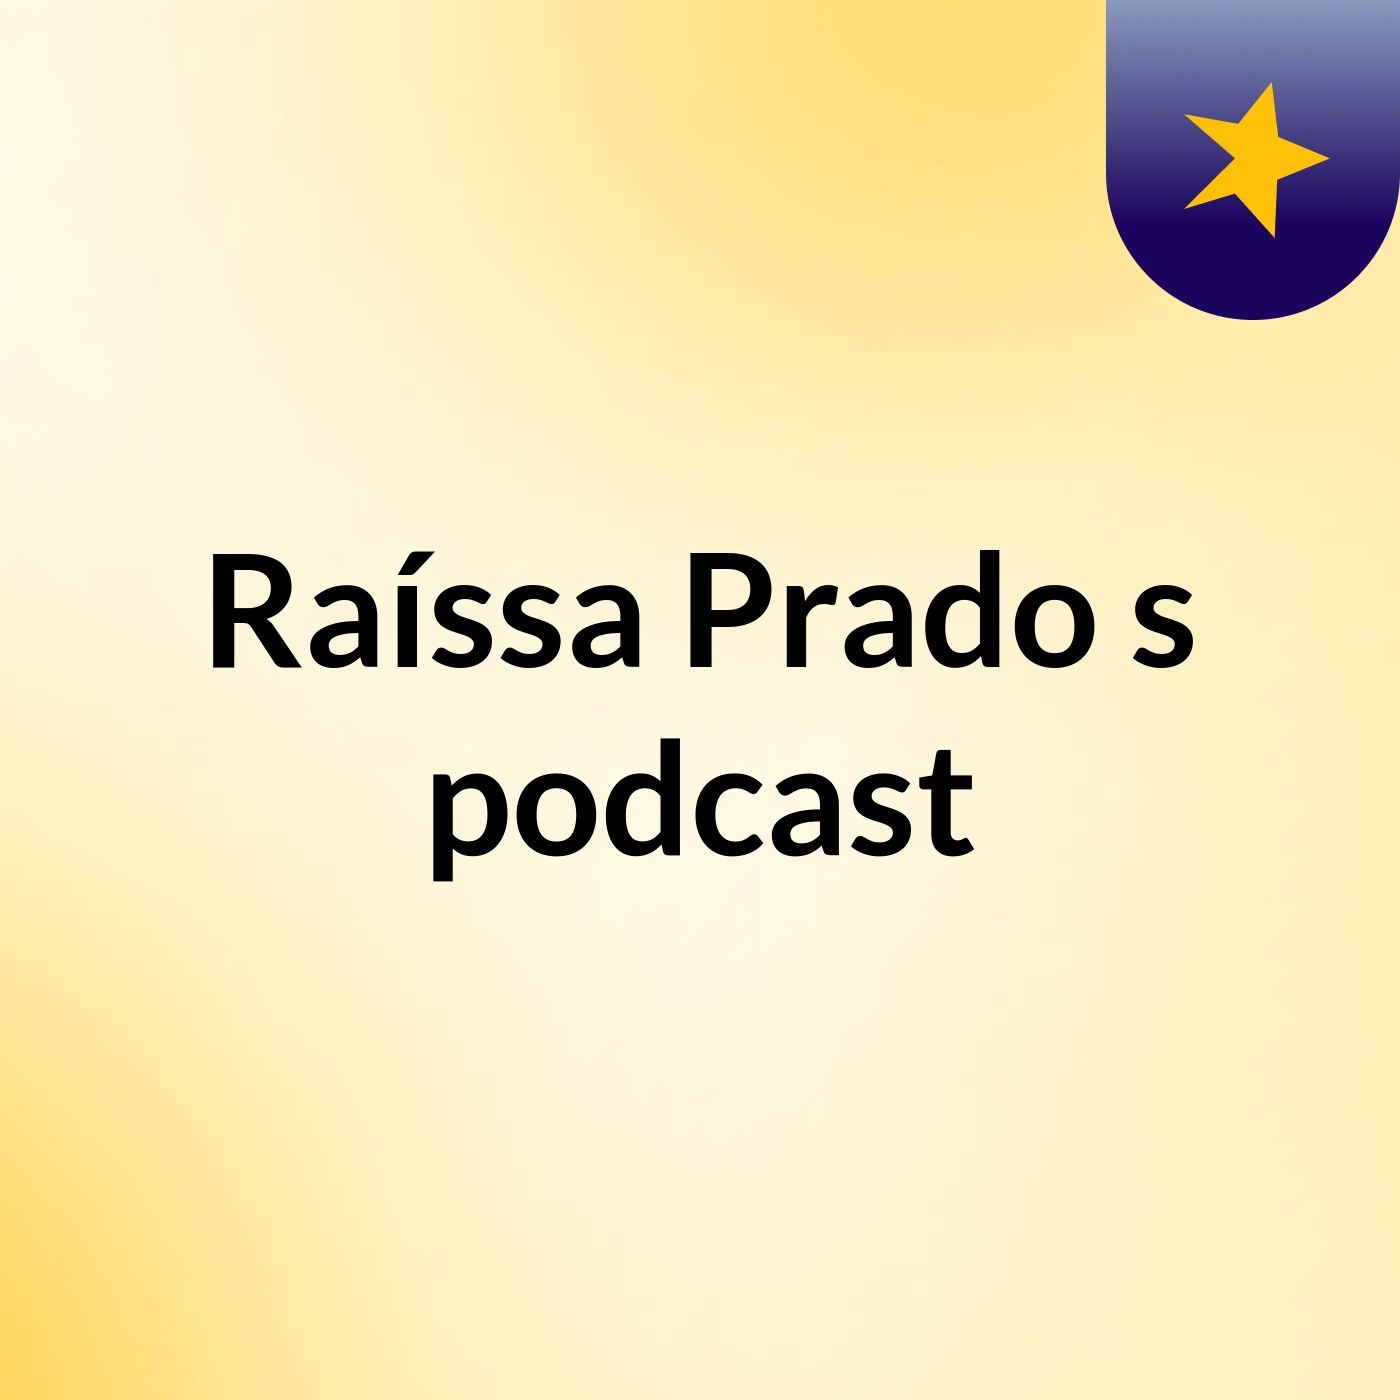 Raíssa Prado's podcast